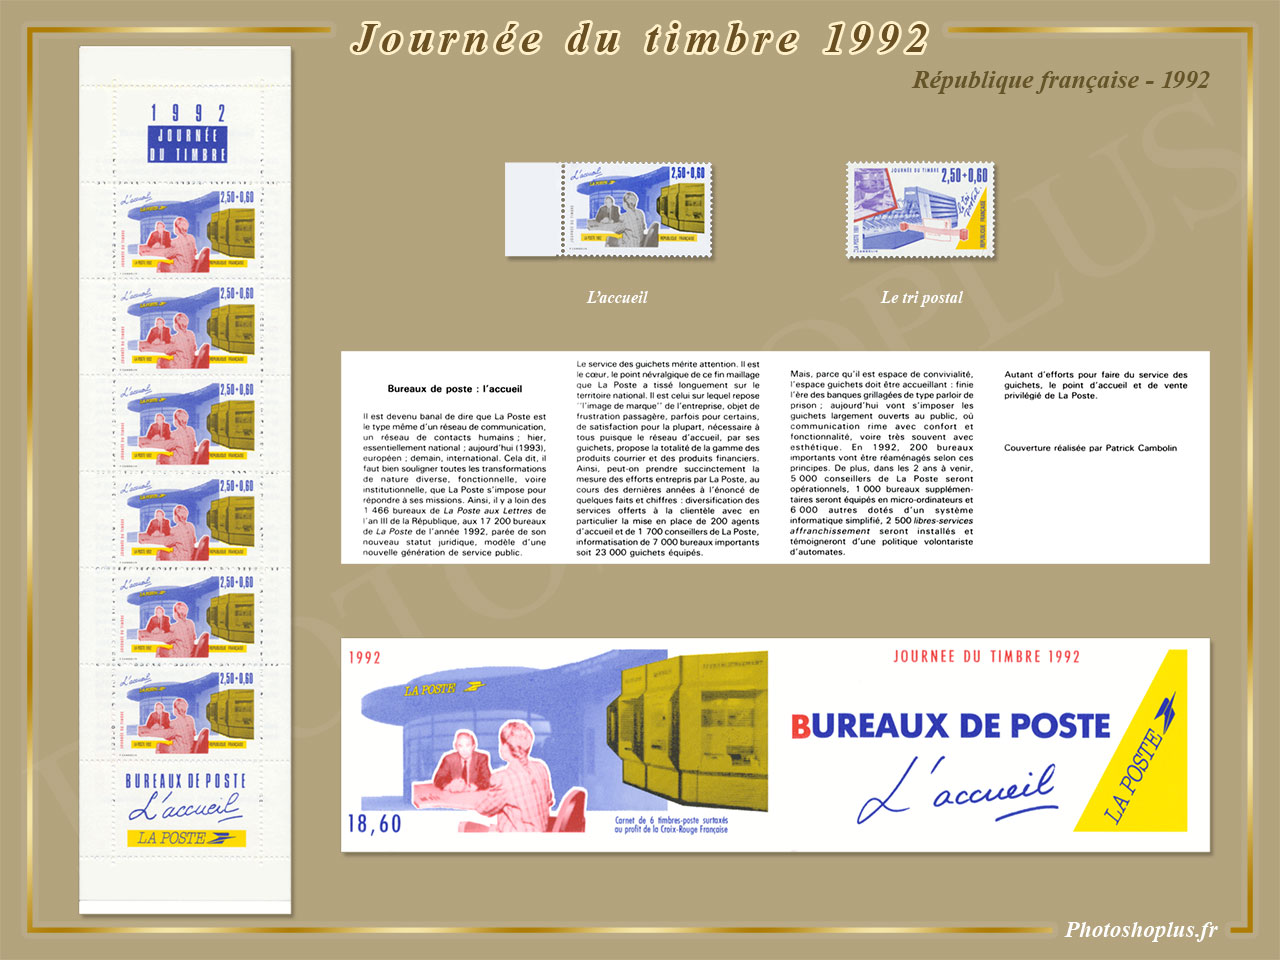 Journée du timbre 1992